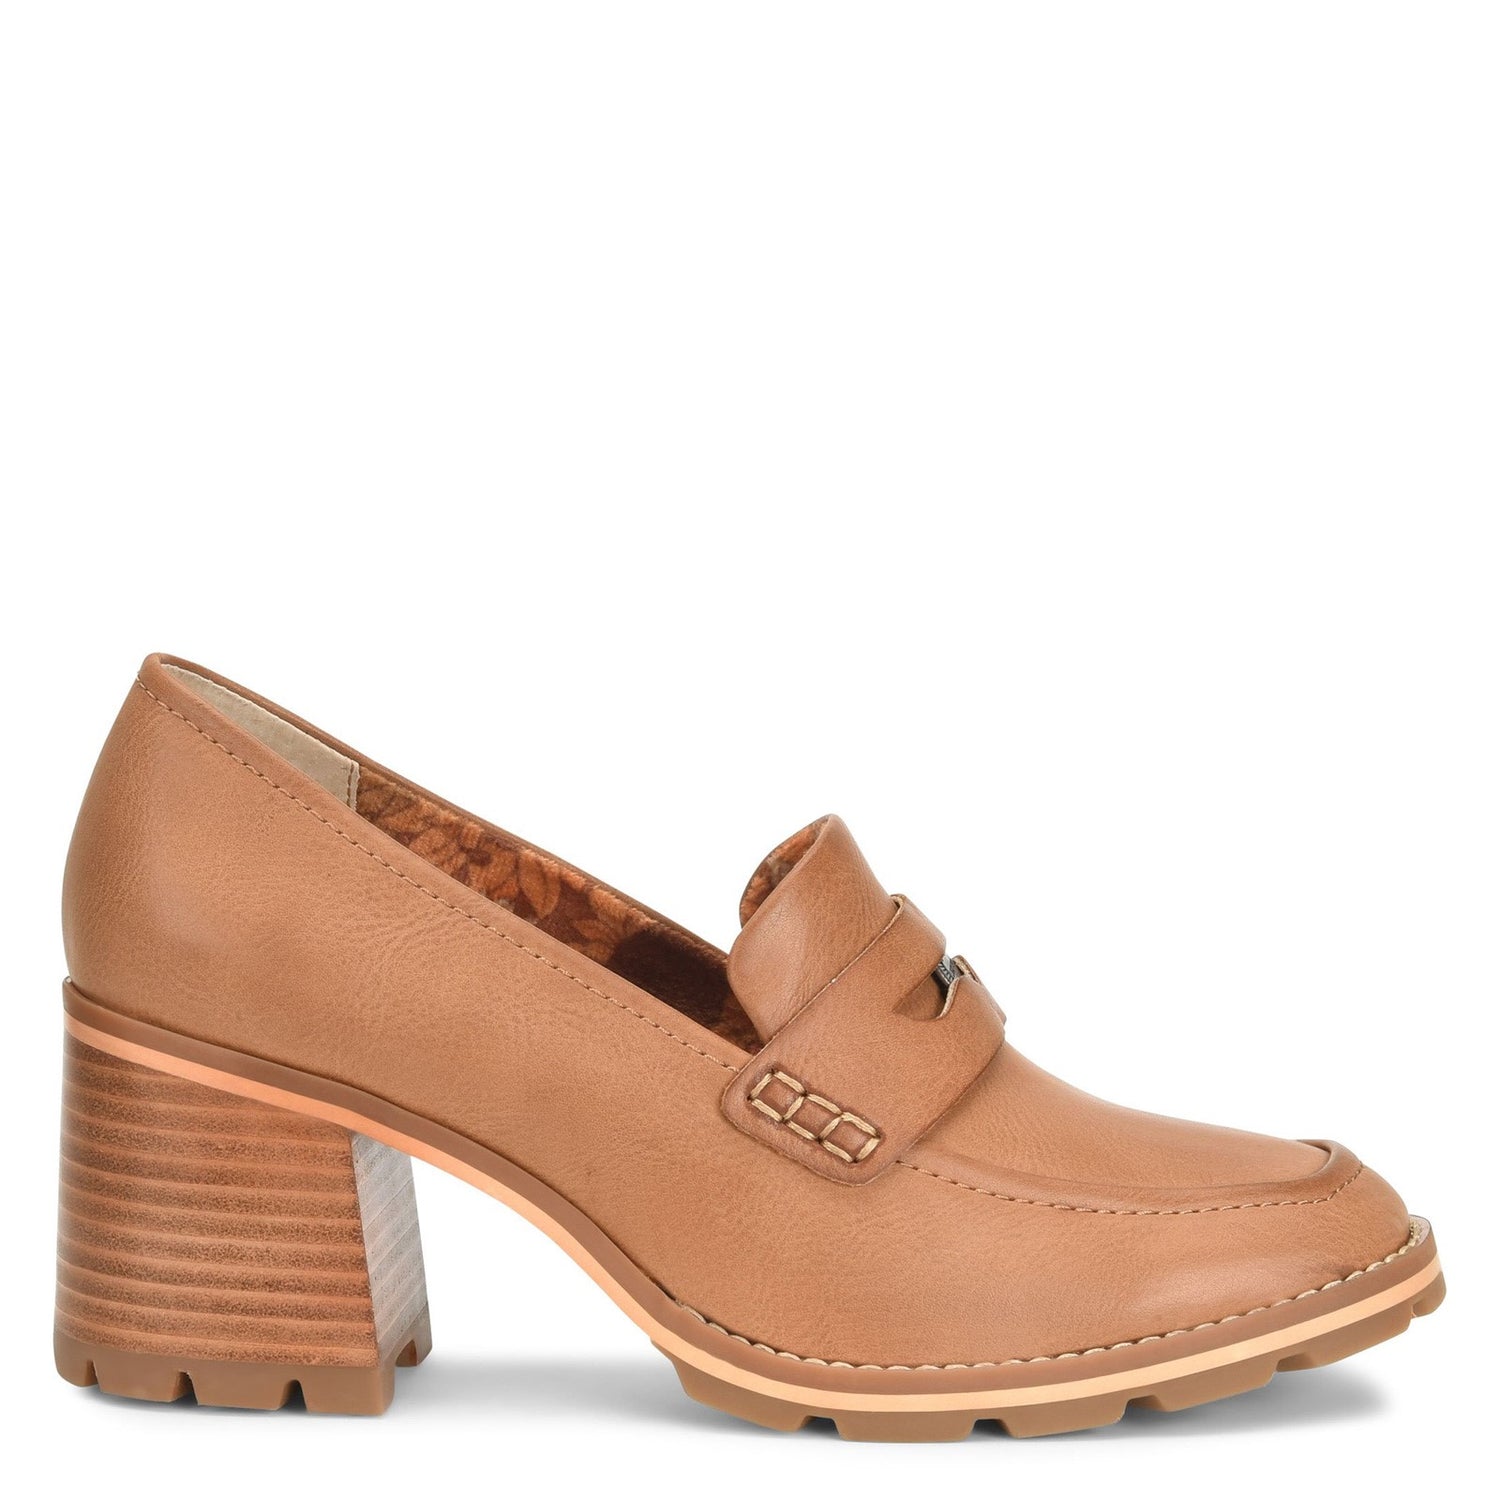 Peltz Shoes  Women's KORKS Corsica Pump Tan KR0015116